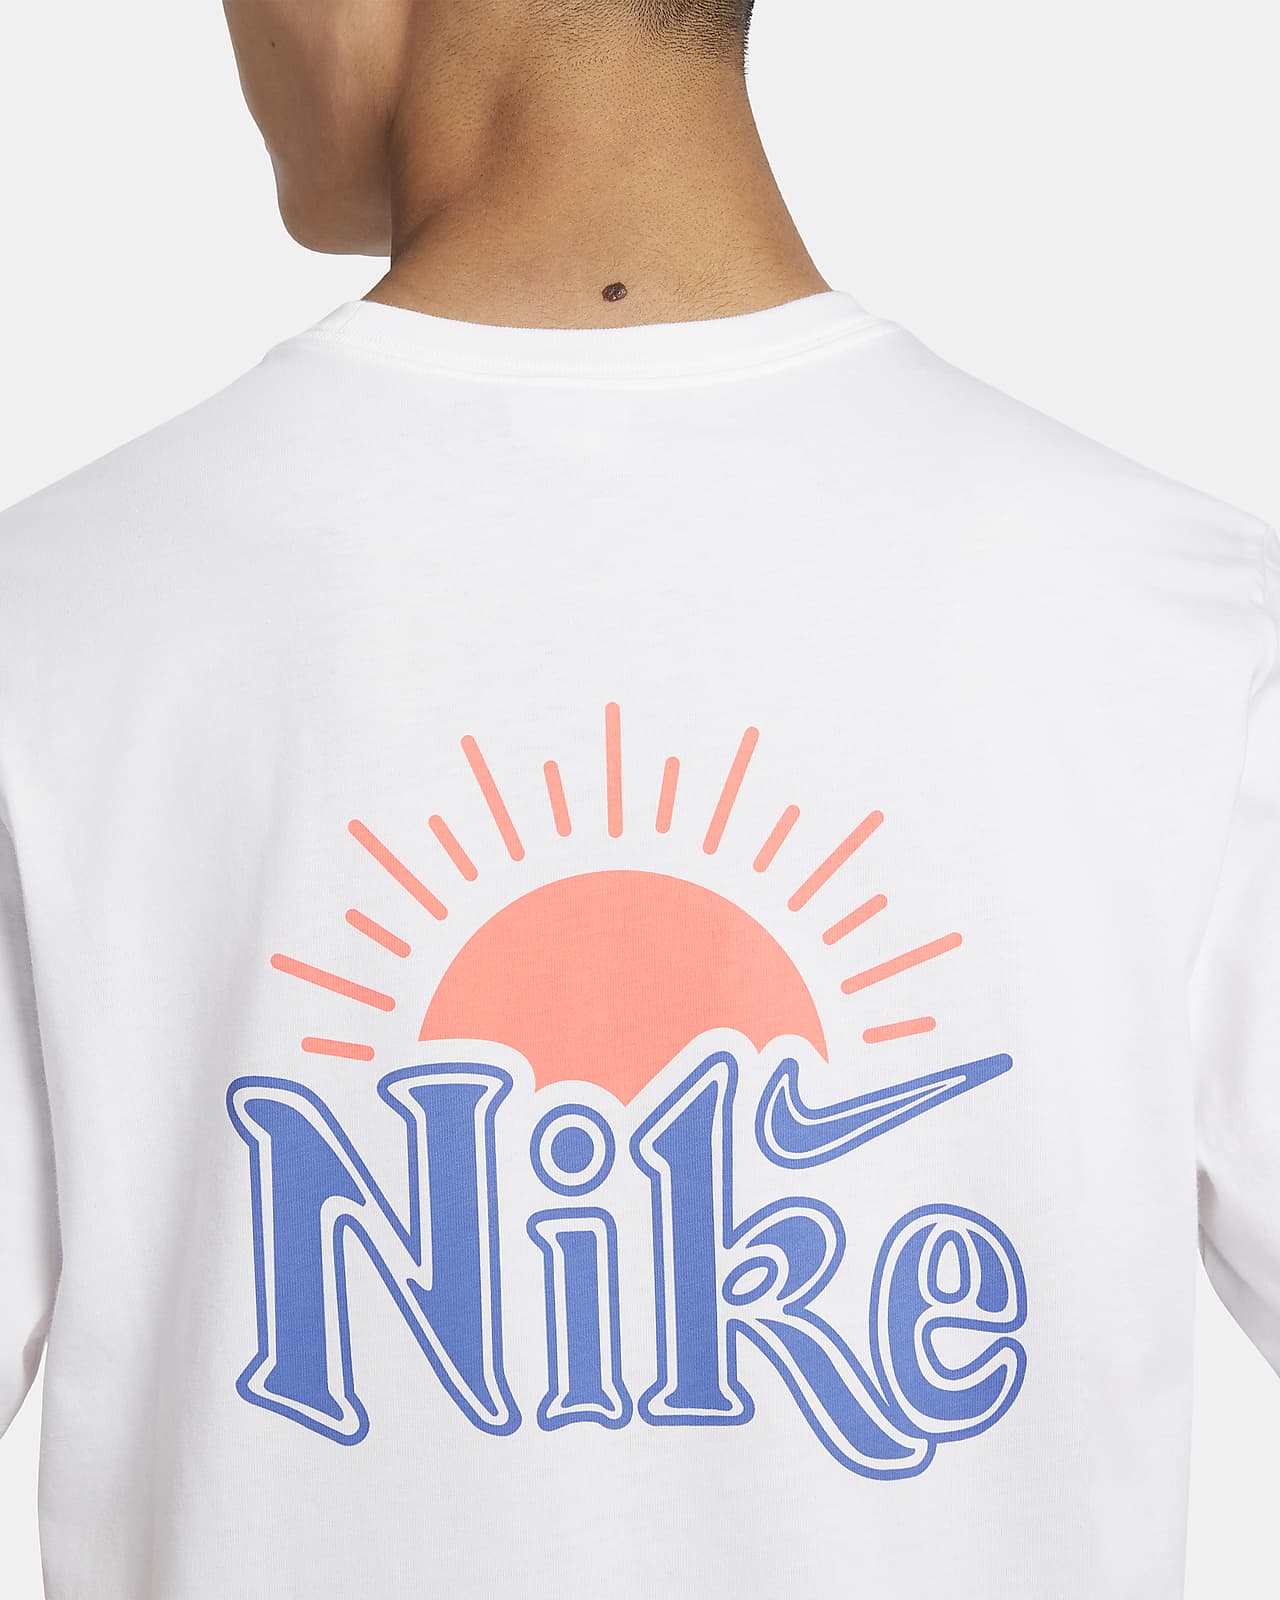 Nike Sportswear Swoosh Men's T-Shirt.